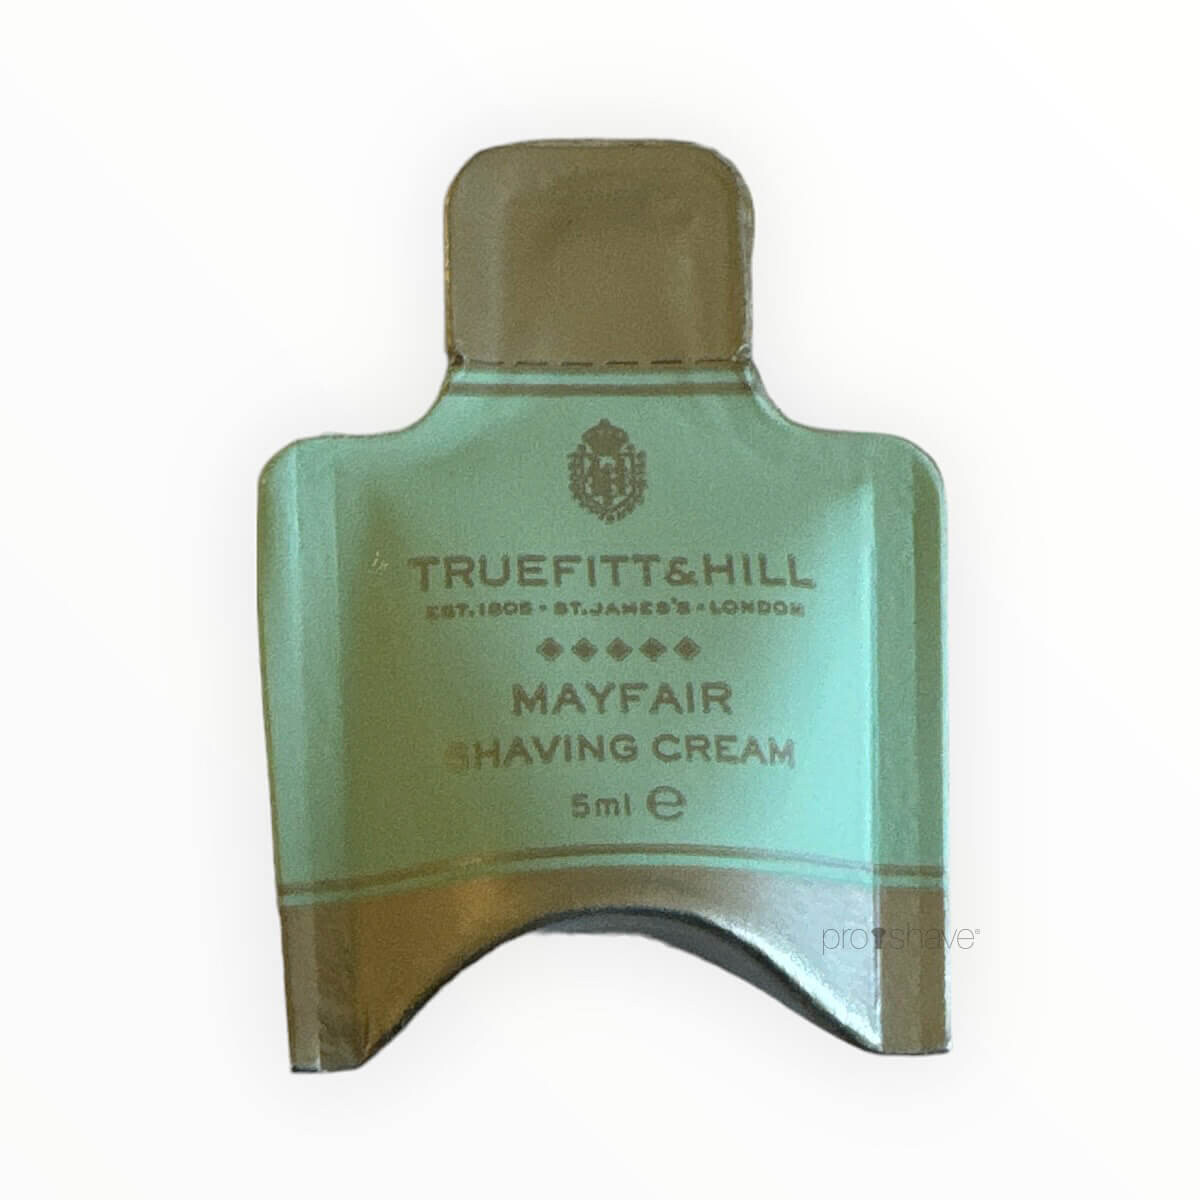 Truefitt & Hill Mayfair Shaving Cream Sample Pack, 5 ml.